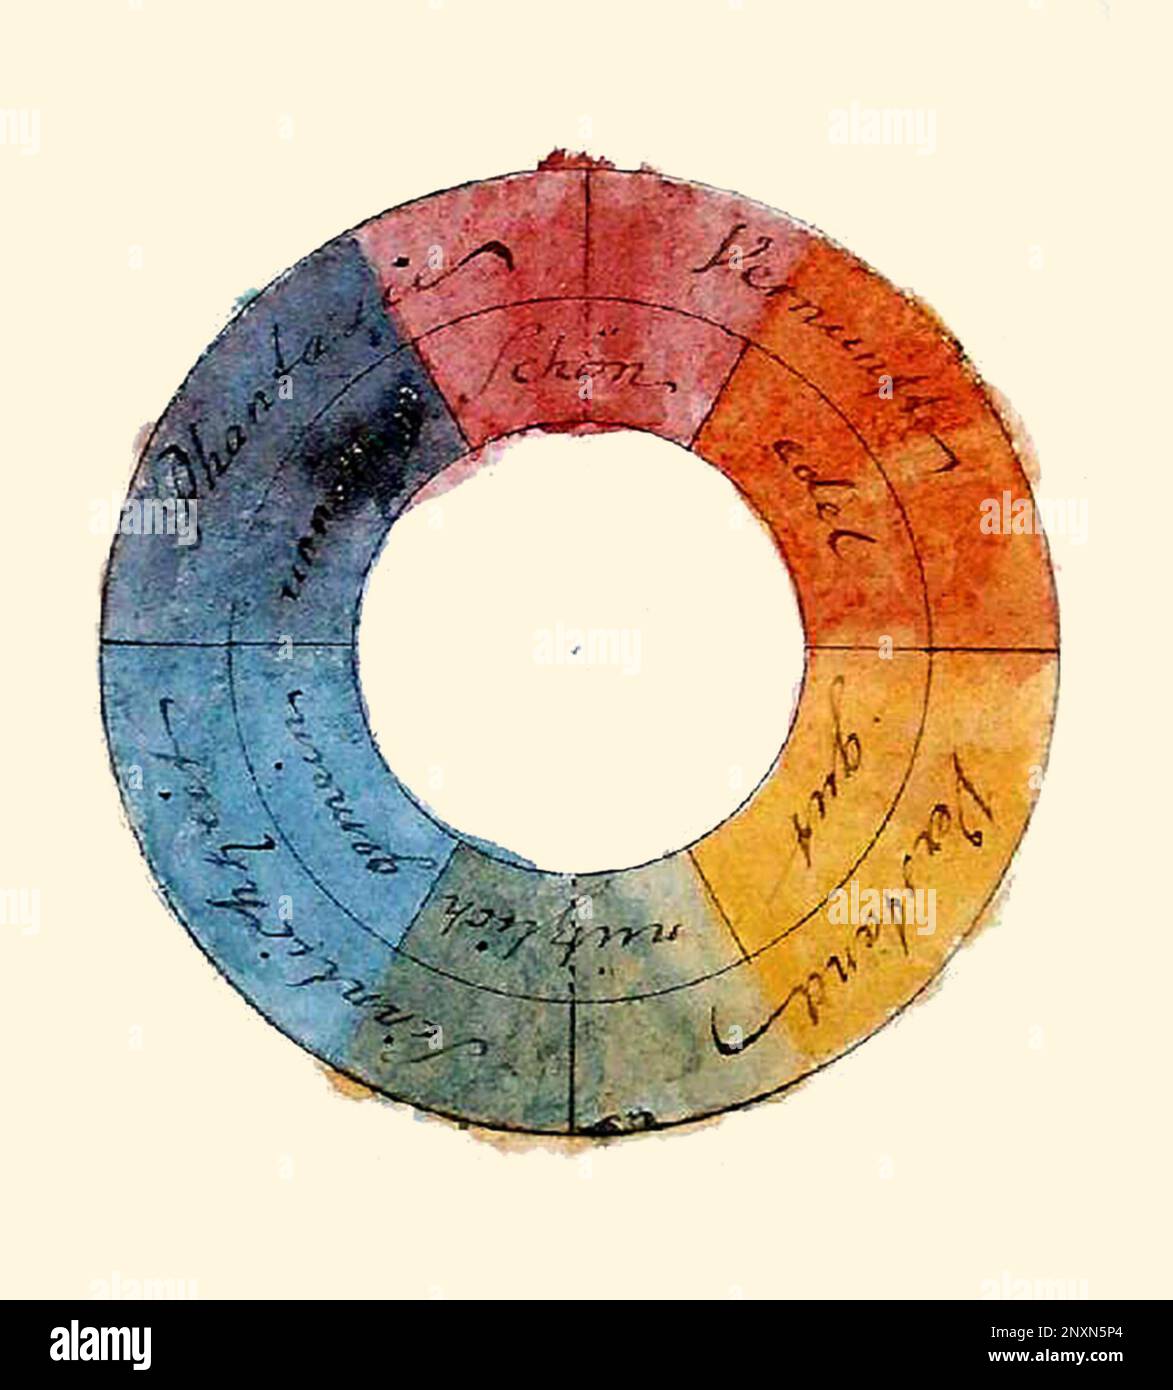 Ruota dei colori simmetrica di Goethe con le qualità simboliche associate, 1809. Ha associato i colori con le seguenti qualità: Rosso con bello, arancio con nobile, giallo con buono, verde con utile, blu con comune, e viola con inutile. Foto Stock